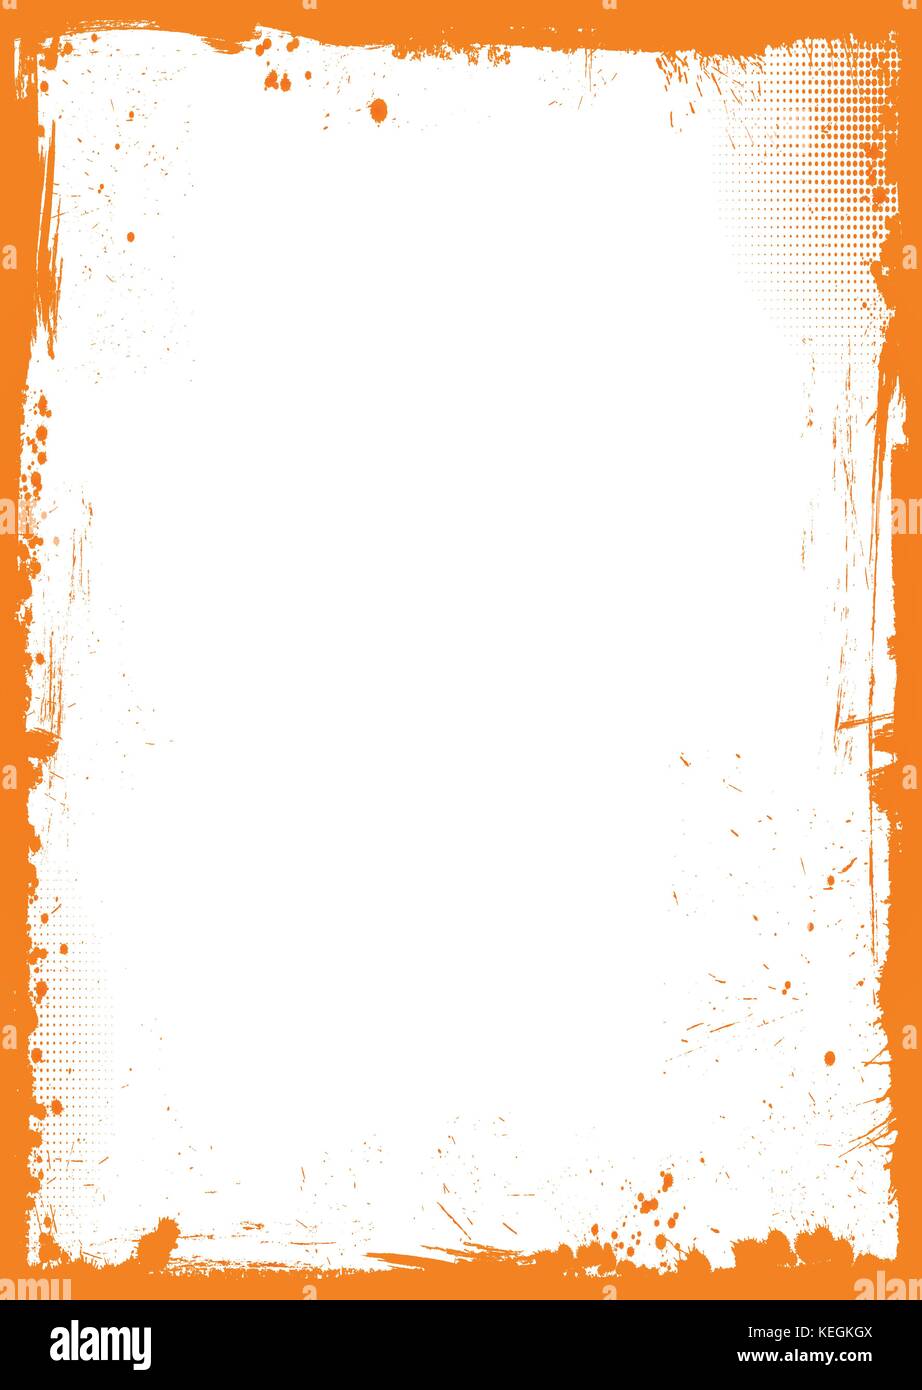 L'orange et blanc vertical fond grunge halloween avec frontière Illustration de Vecteur